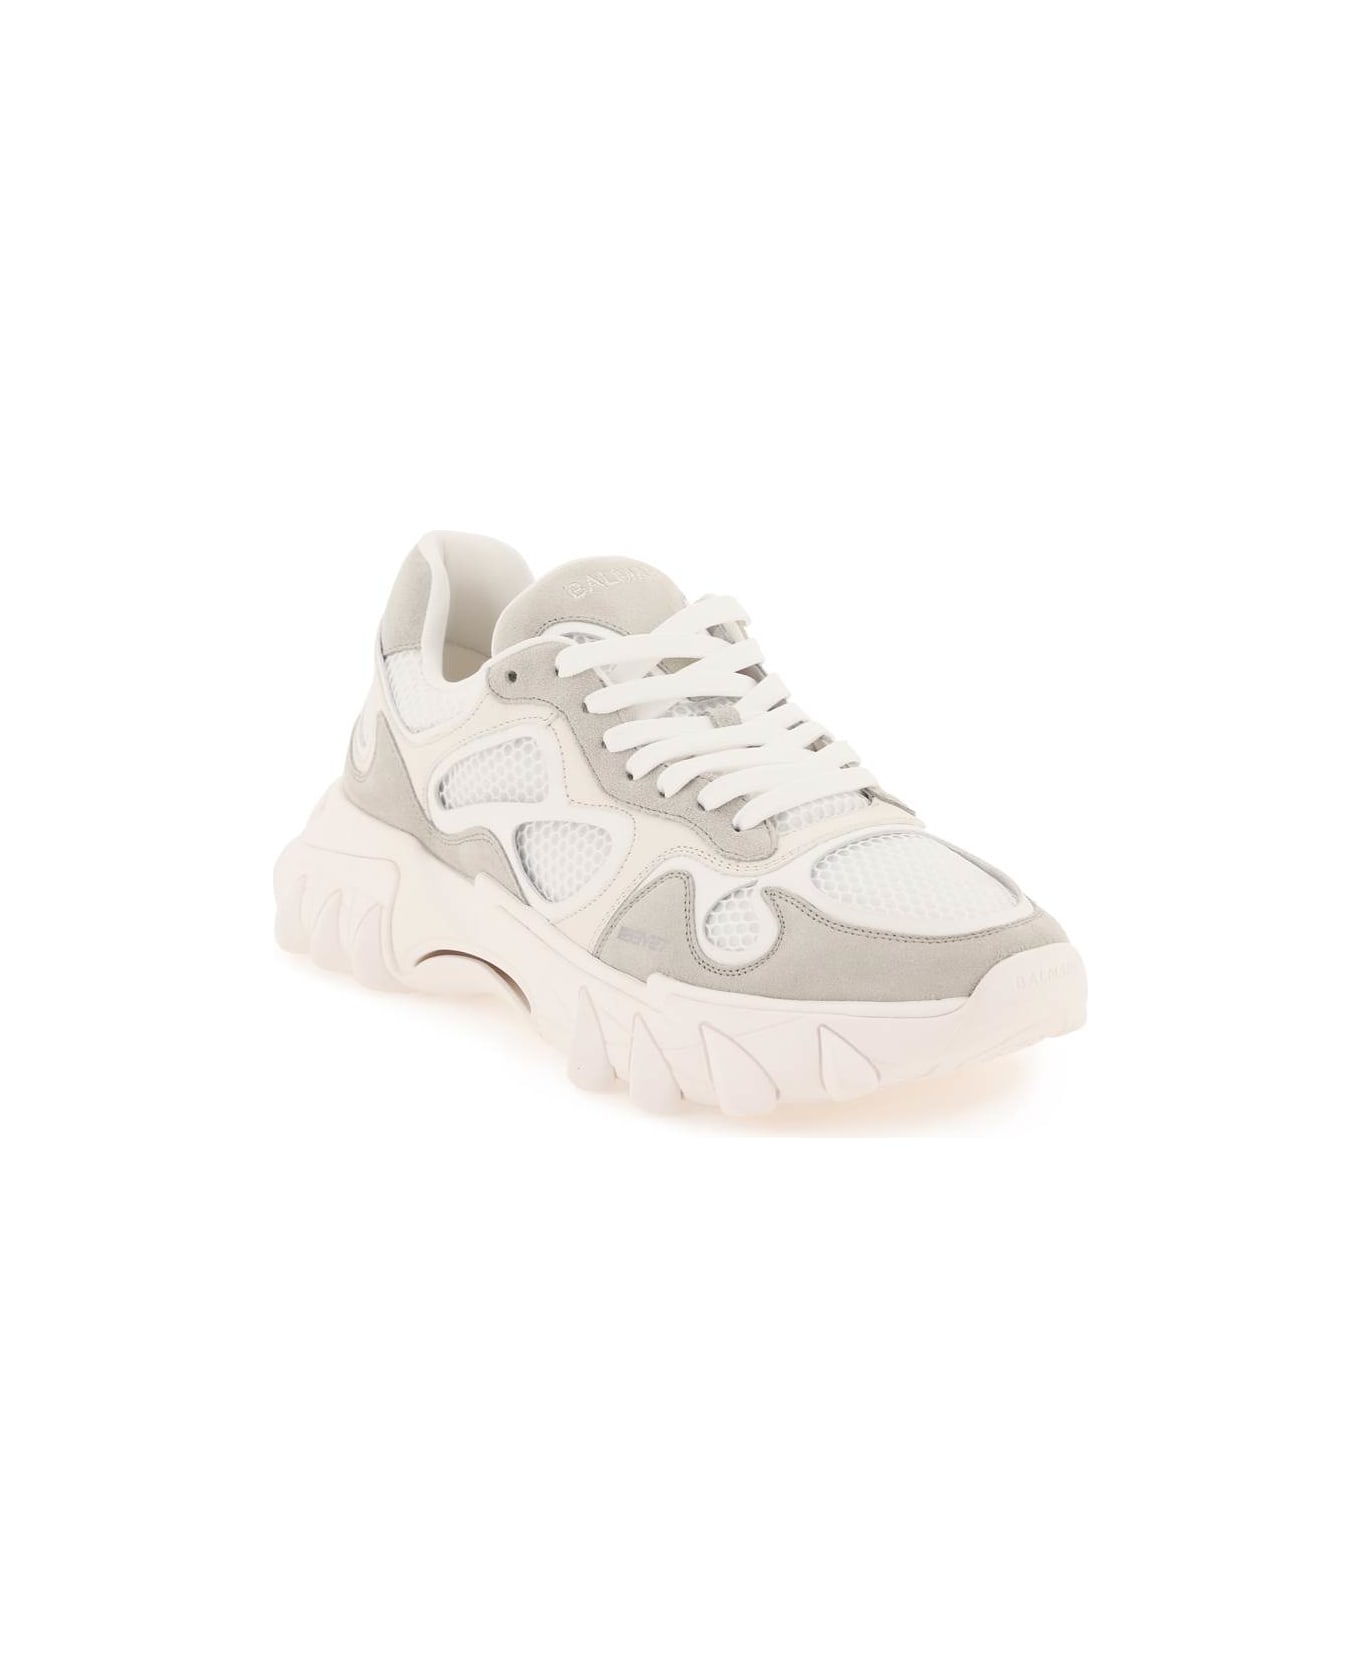 Balmain B-east Sneakers - WHITE